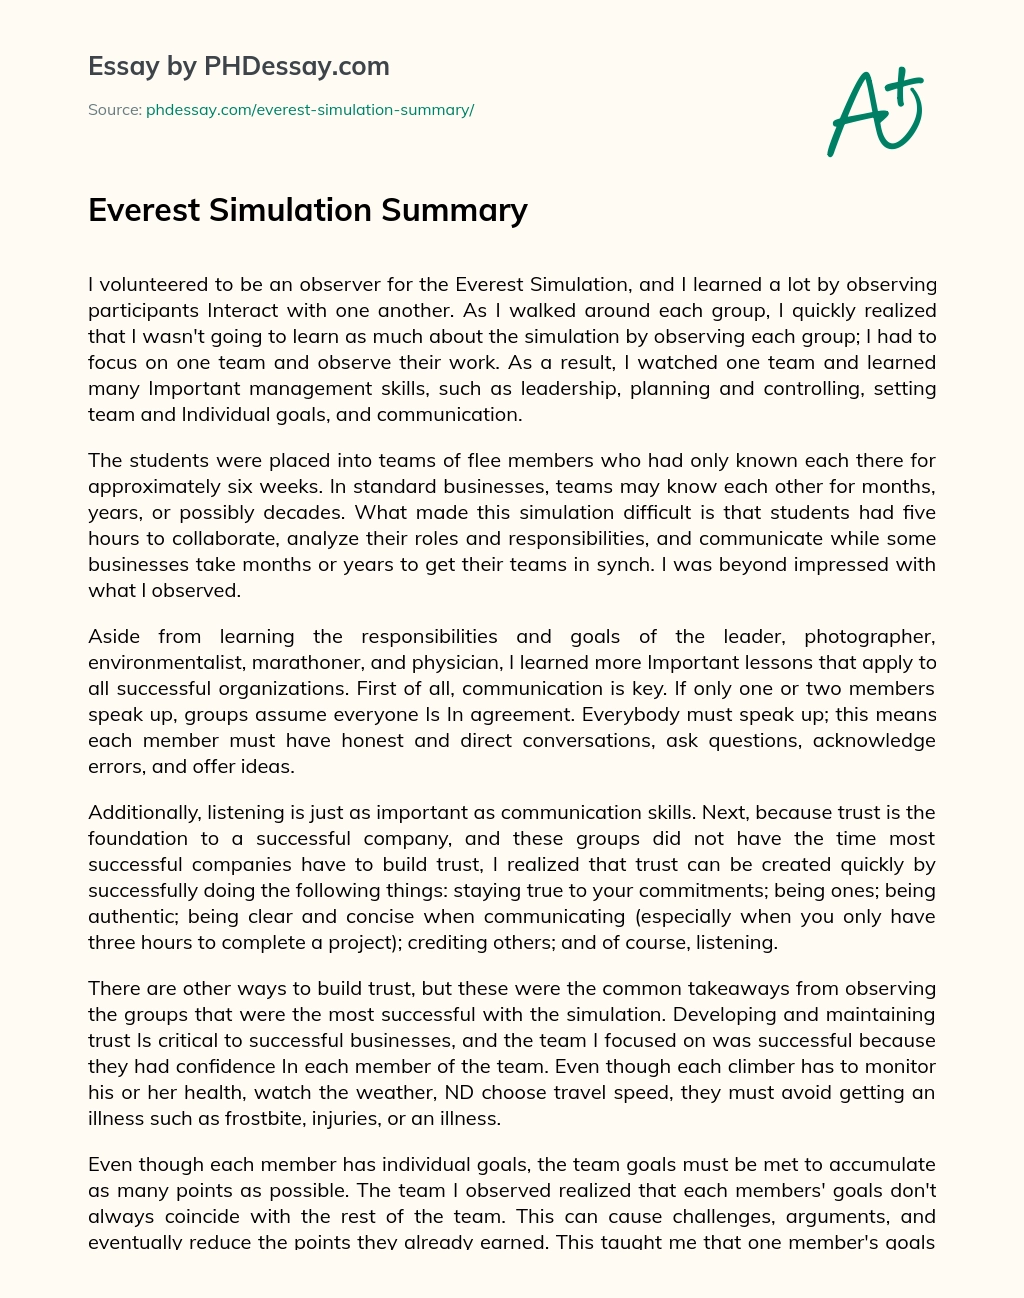 Everest Simulation Summary essay